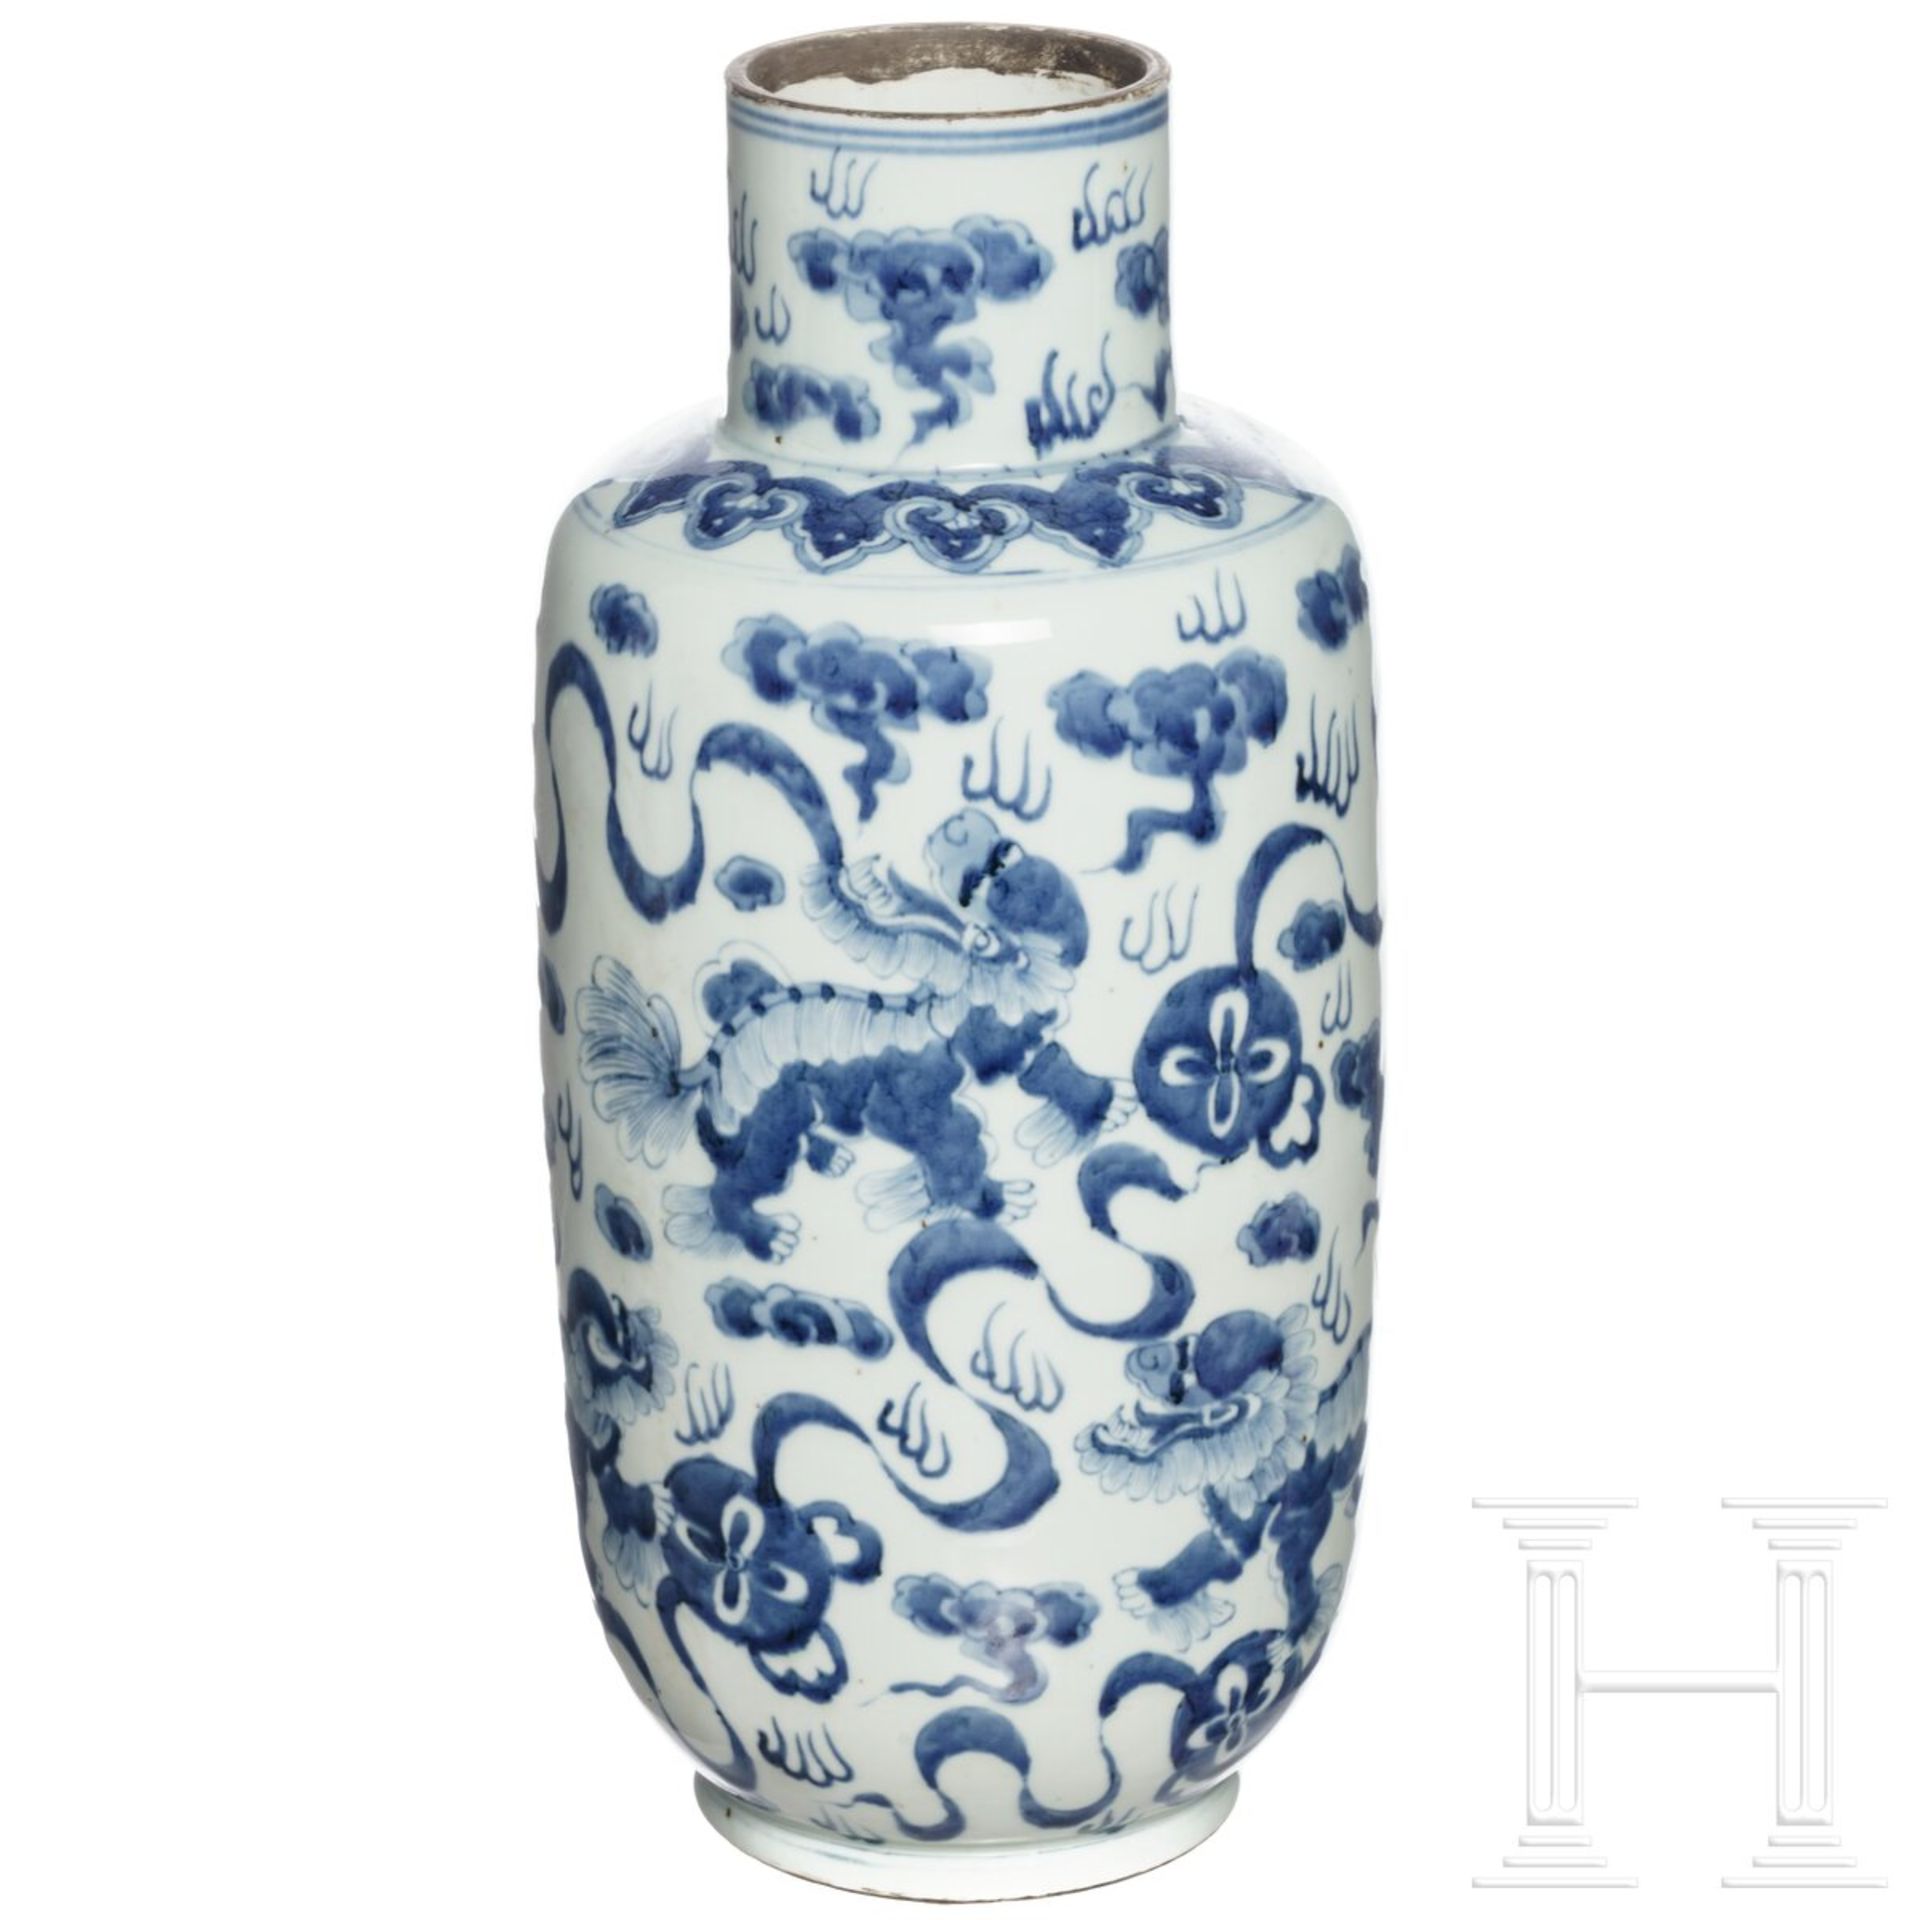 Große blau-weiß glasierte Vase, China, 20. Jdht.  - Bild 2 aus 4